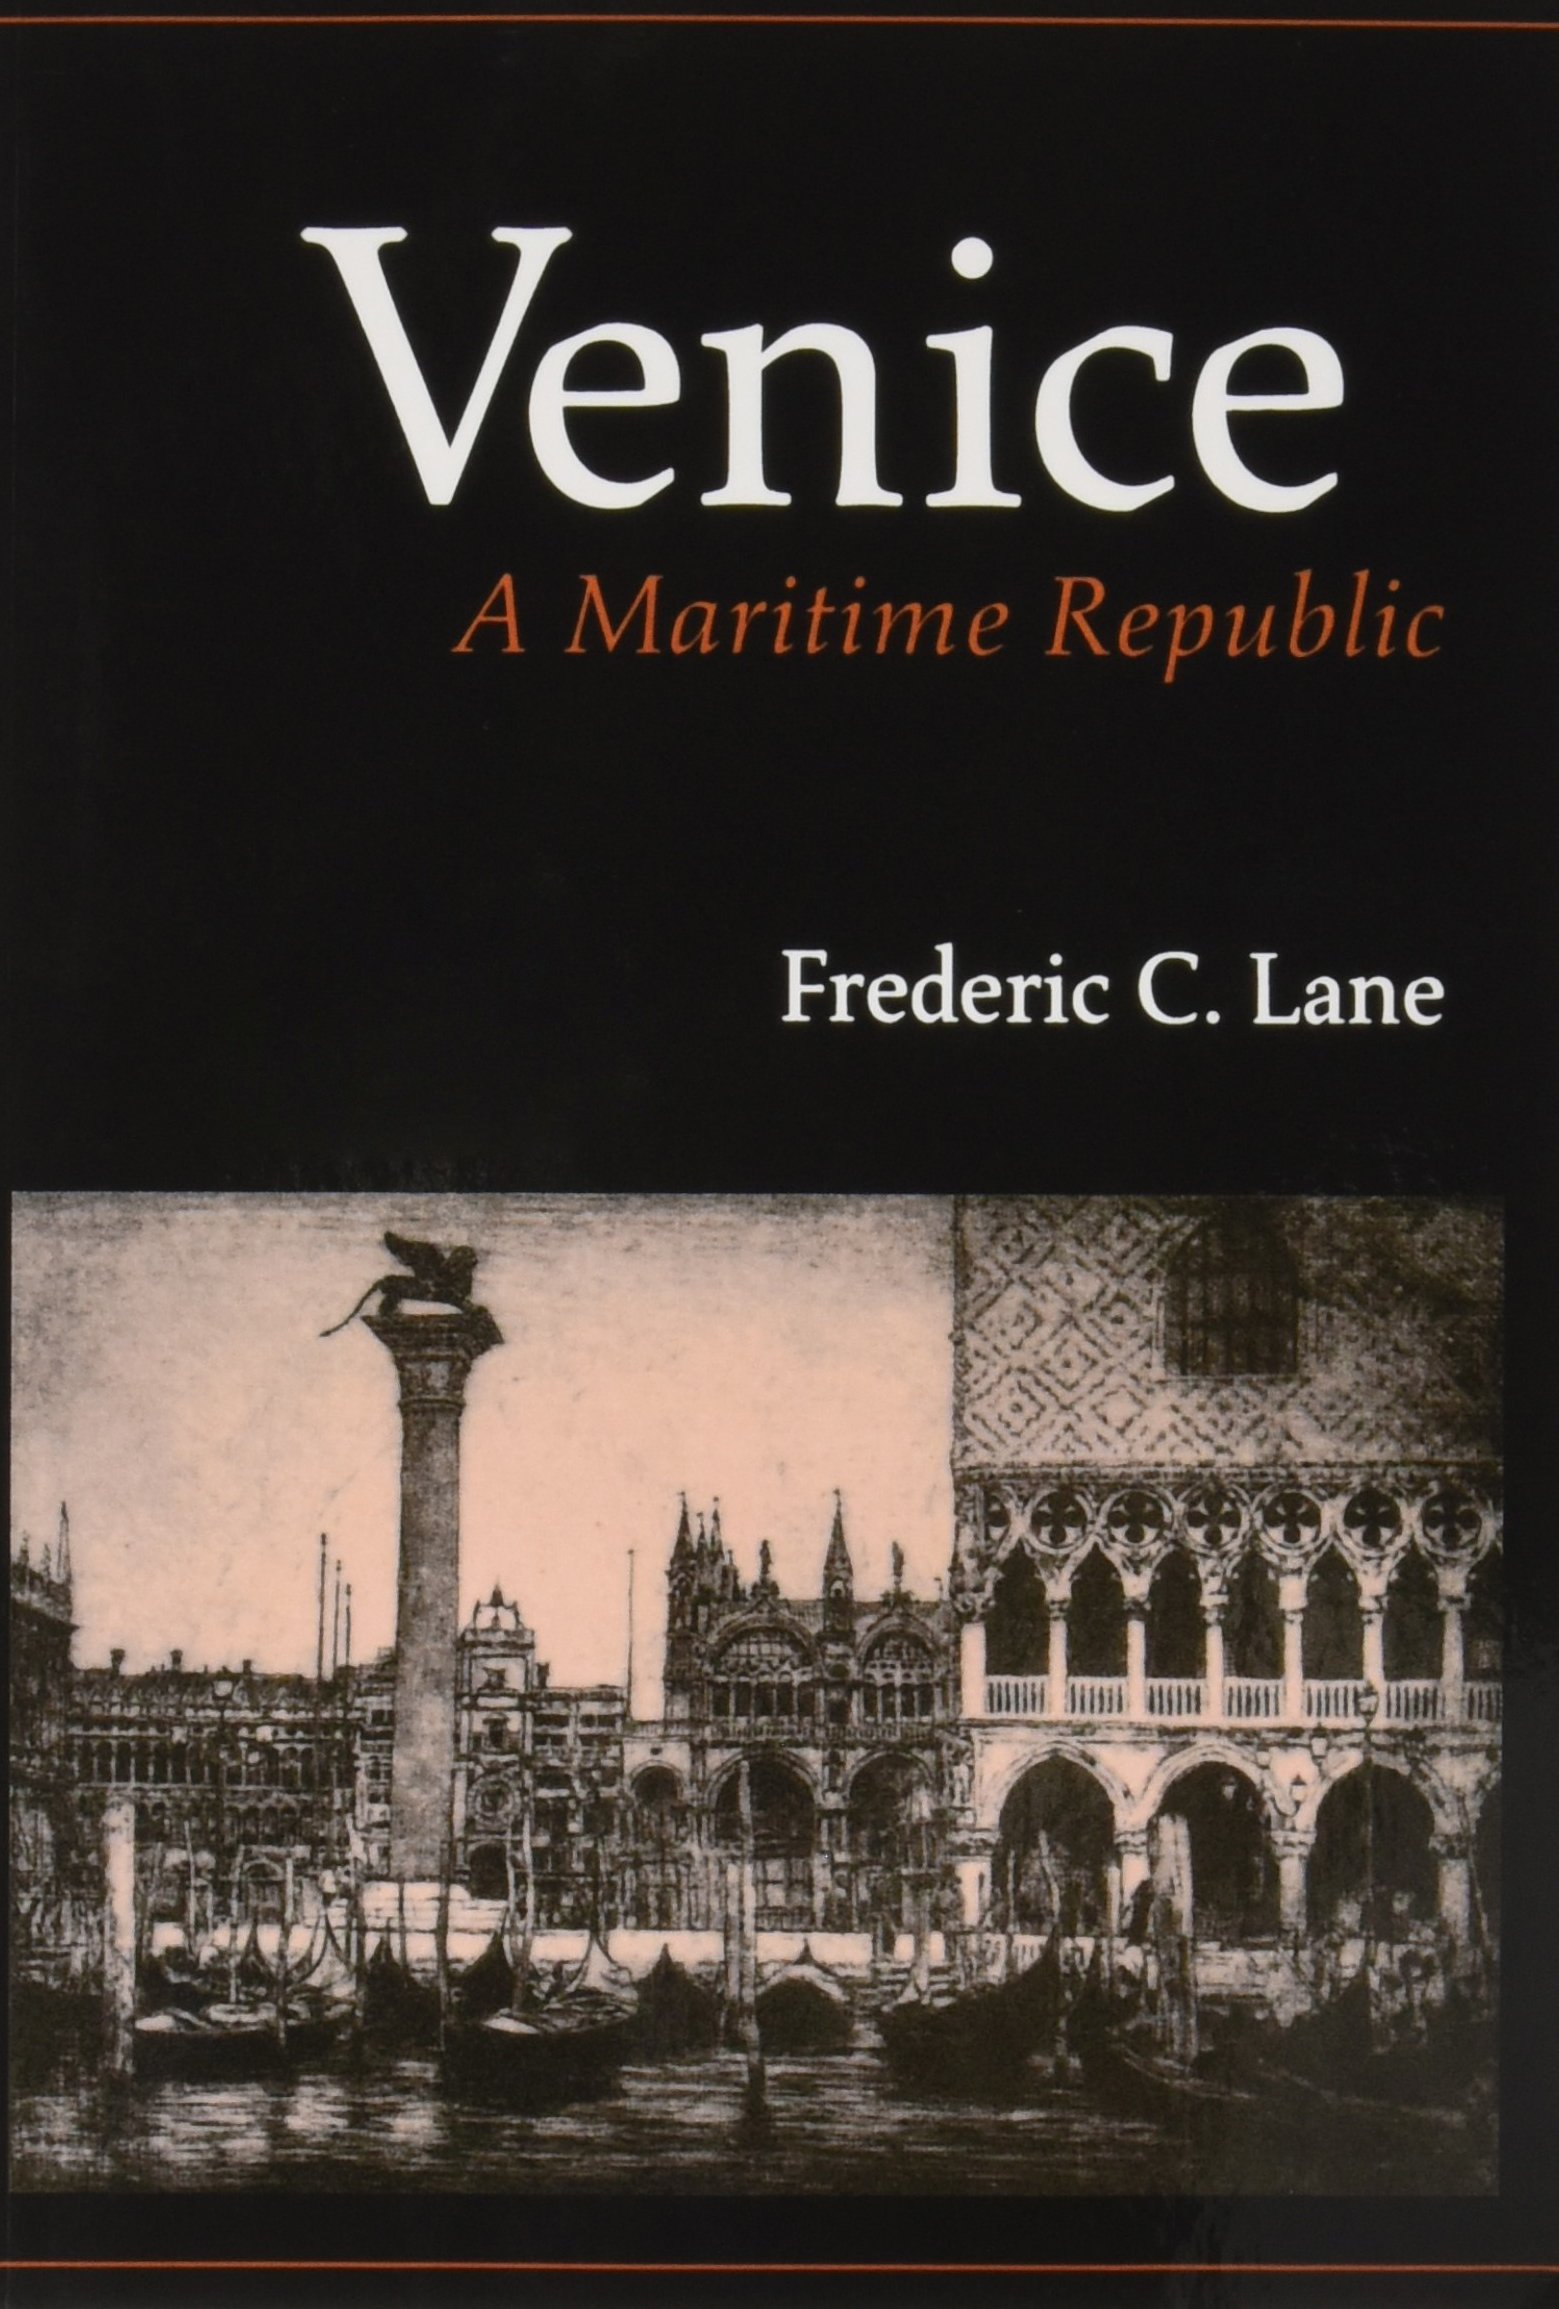 Venice, a maritime republic